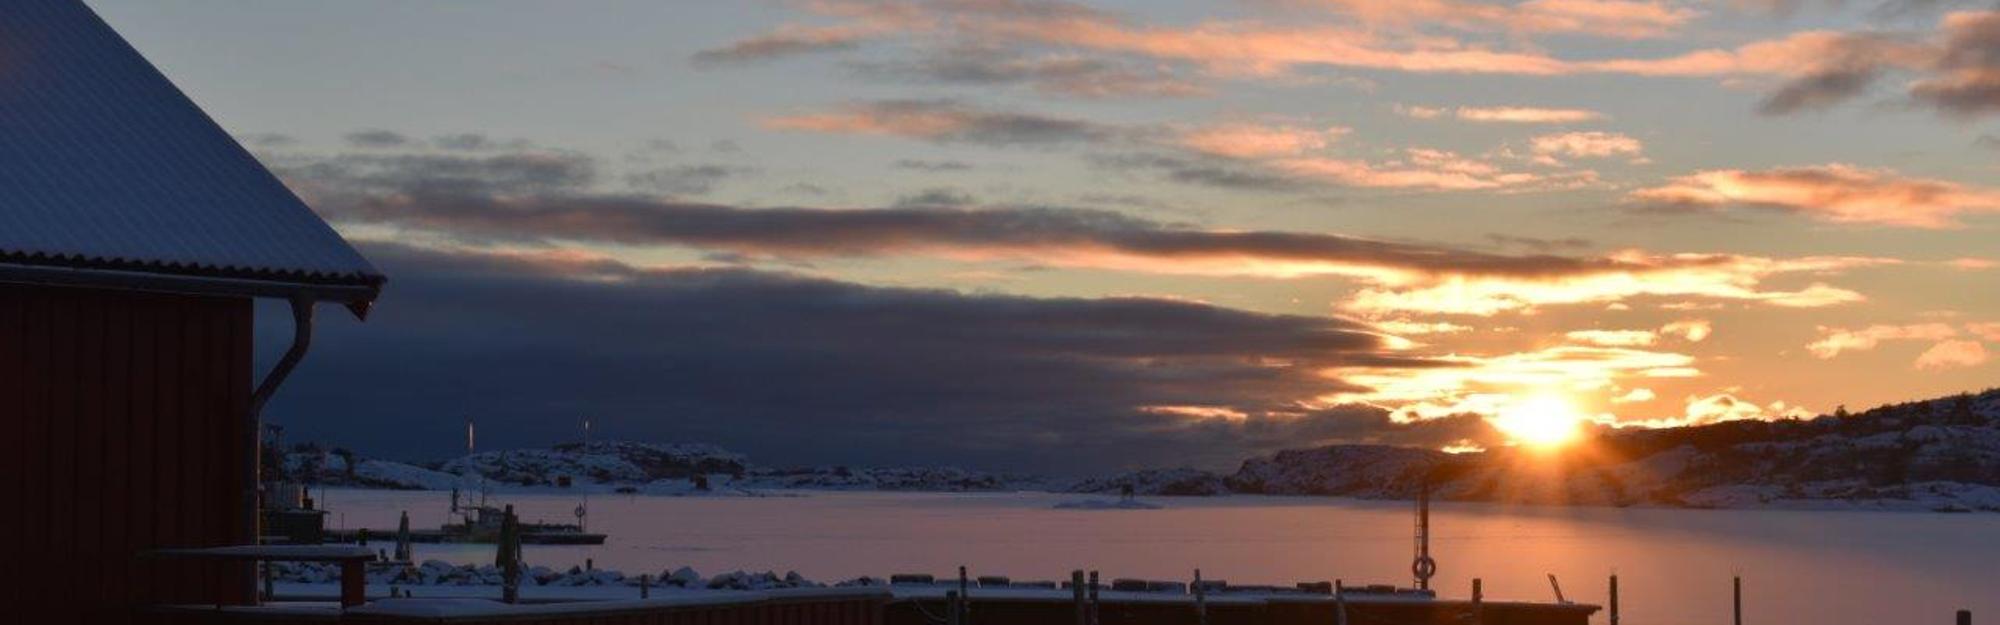 Solnedgång över istäckt hav i Fjällbacka